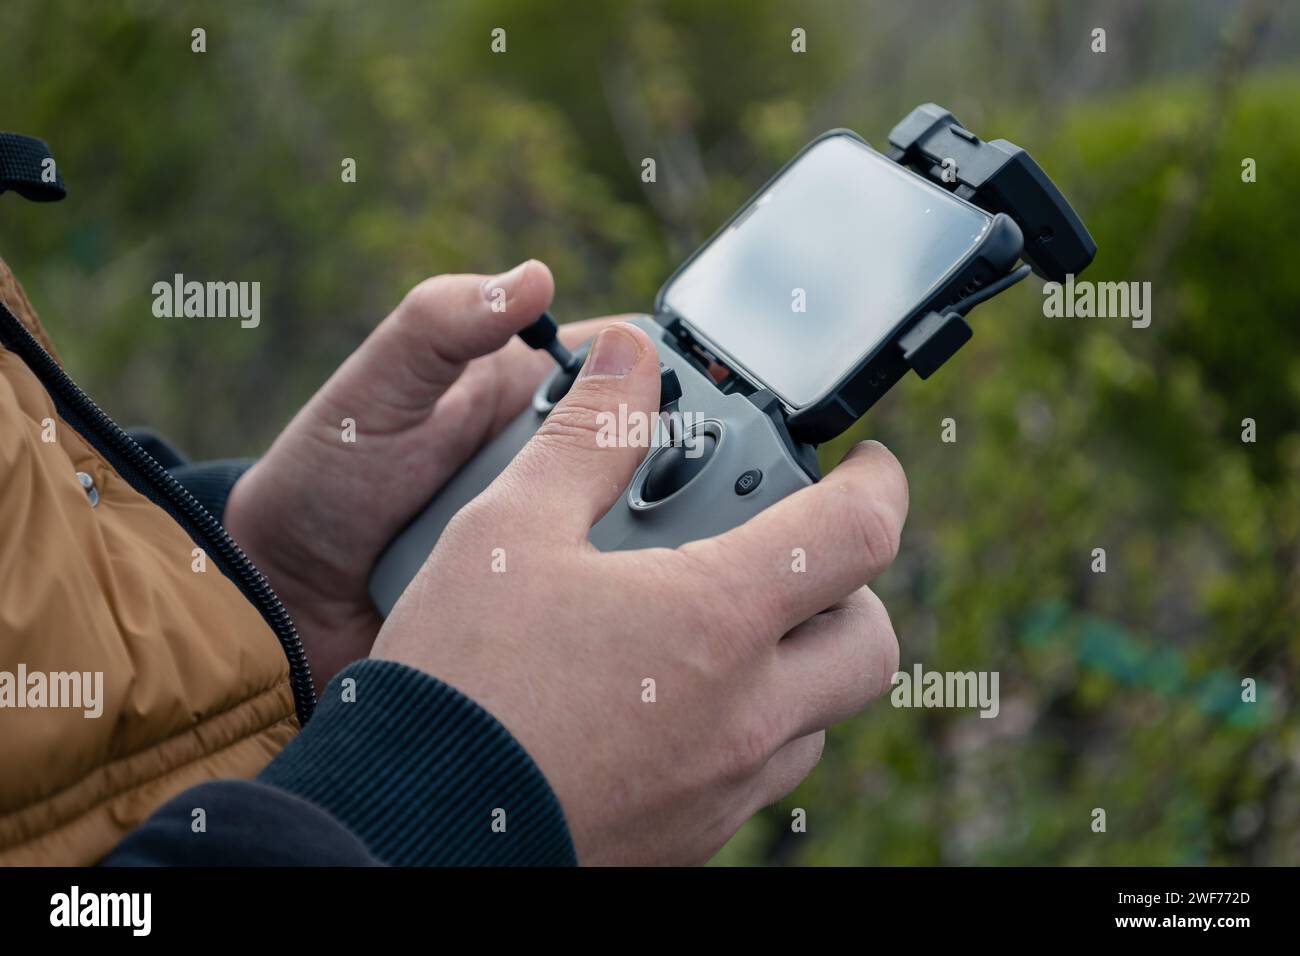 Les mains masculines tiennent un panneau de commande drone avec téléphone connecté, gros plan. Travail de vidéographie, passe-temps. Gestion par vol quadcopter et enregistrement vidéo depuis ab Banque D'Images